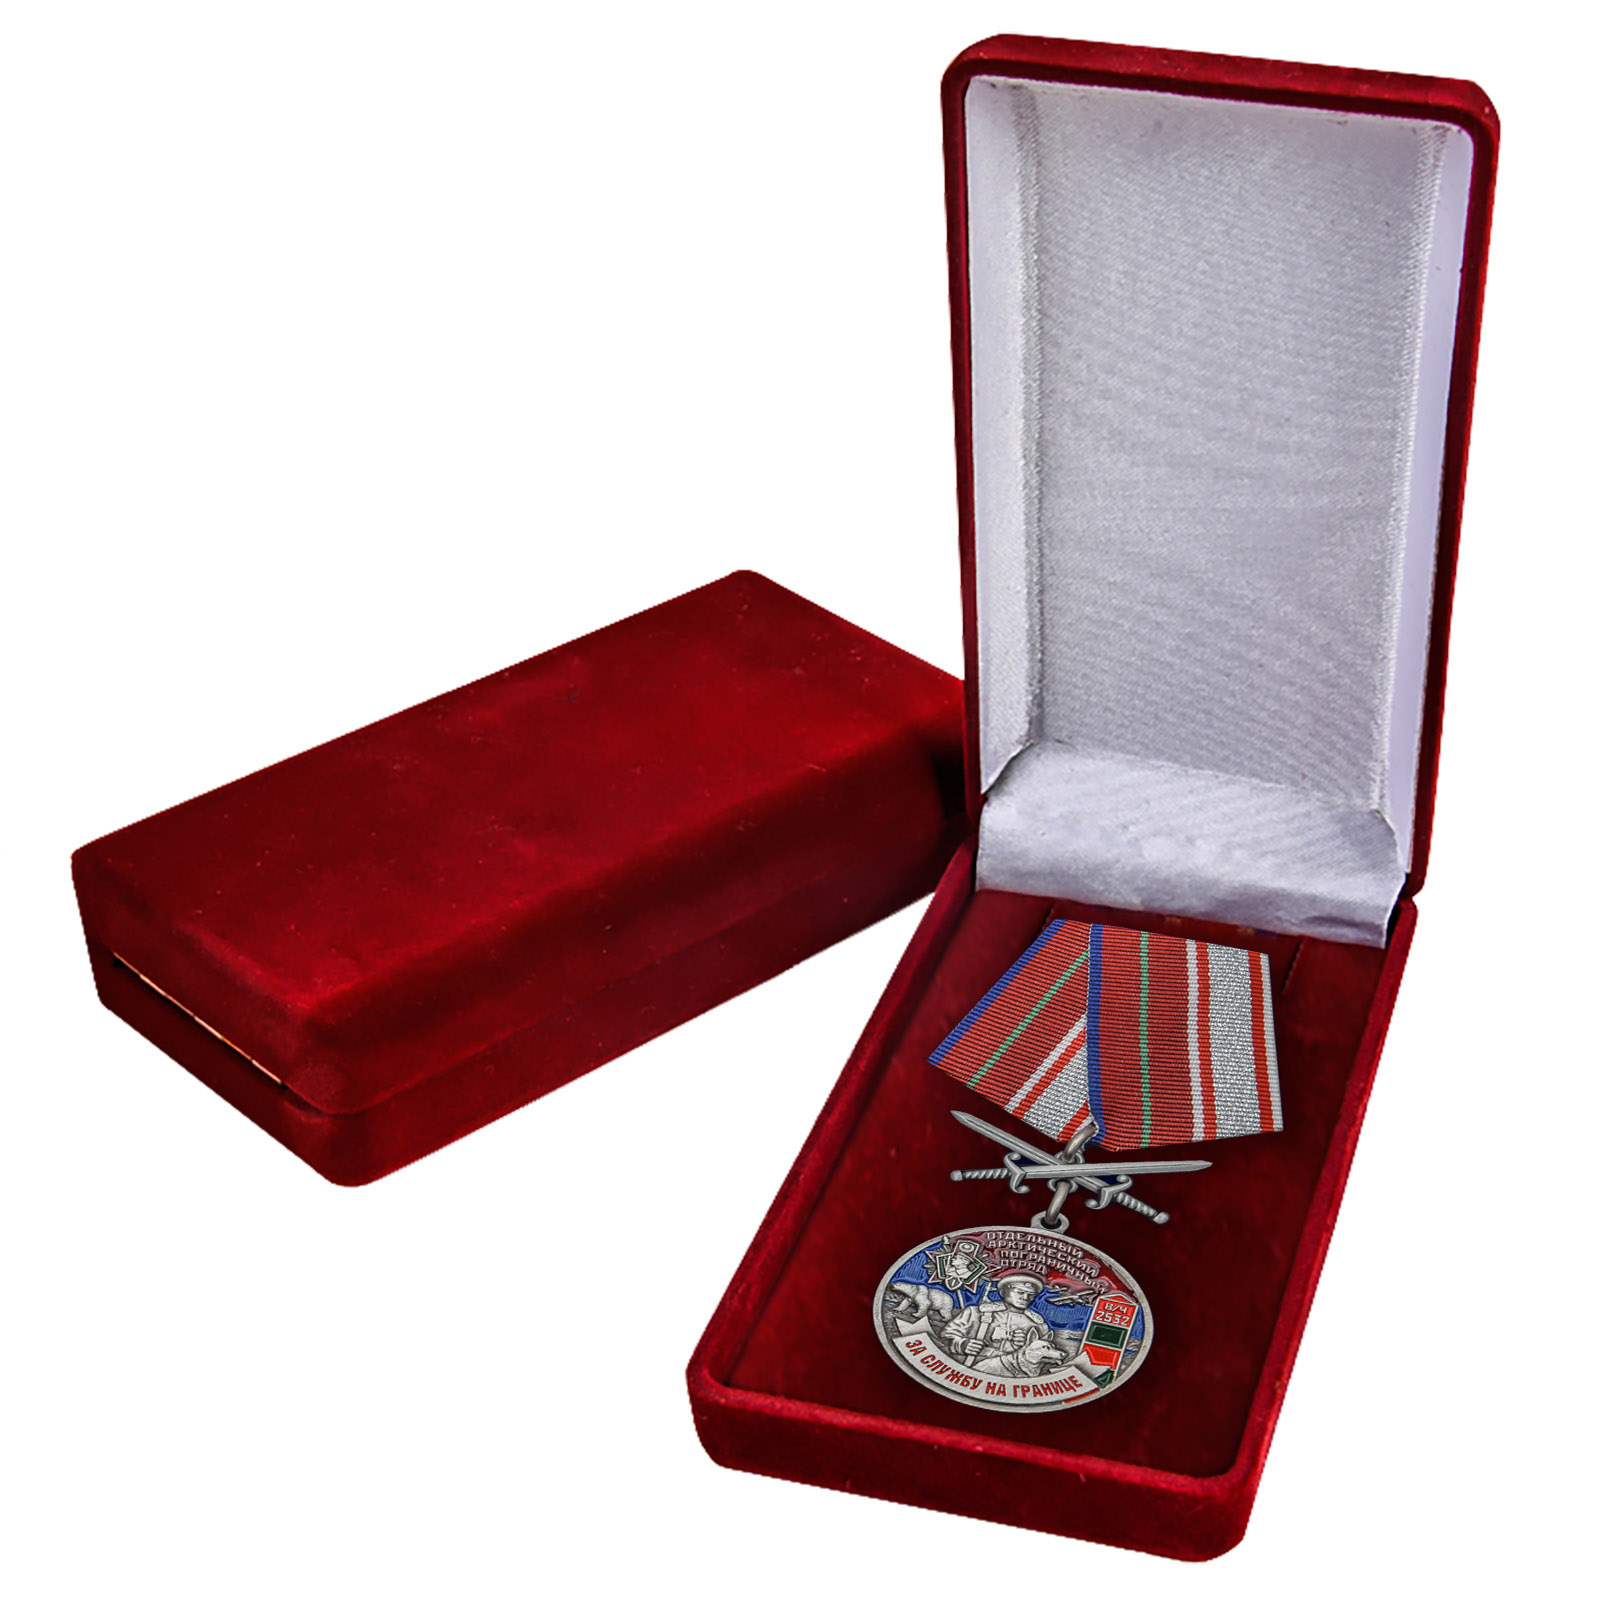 Наградная медаль "За службу в Арктическом пограничном отряде" 